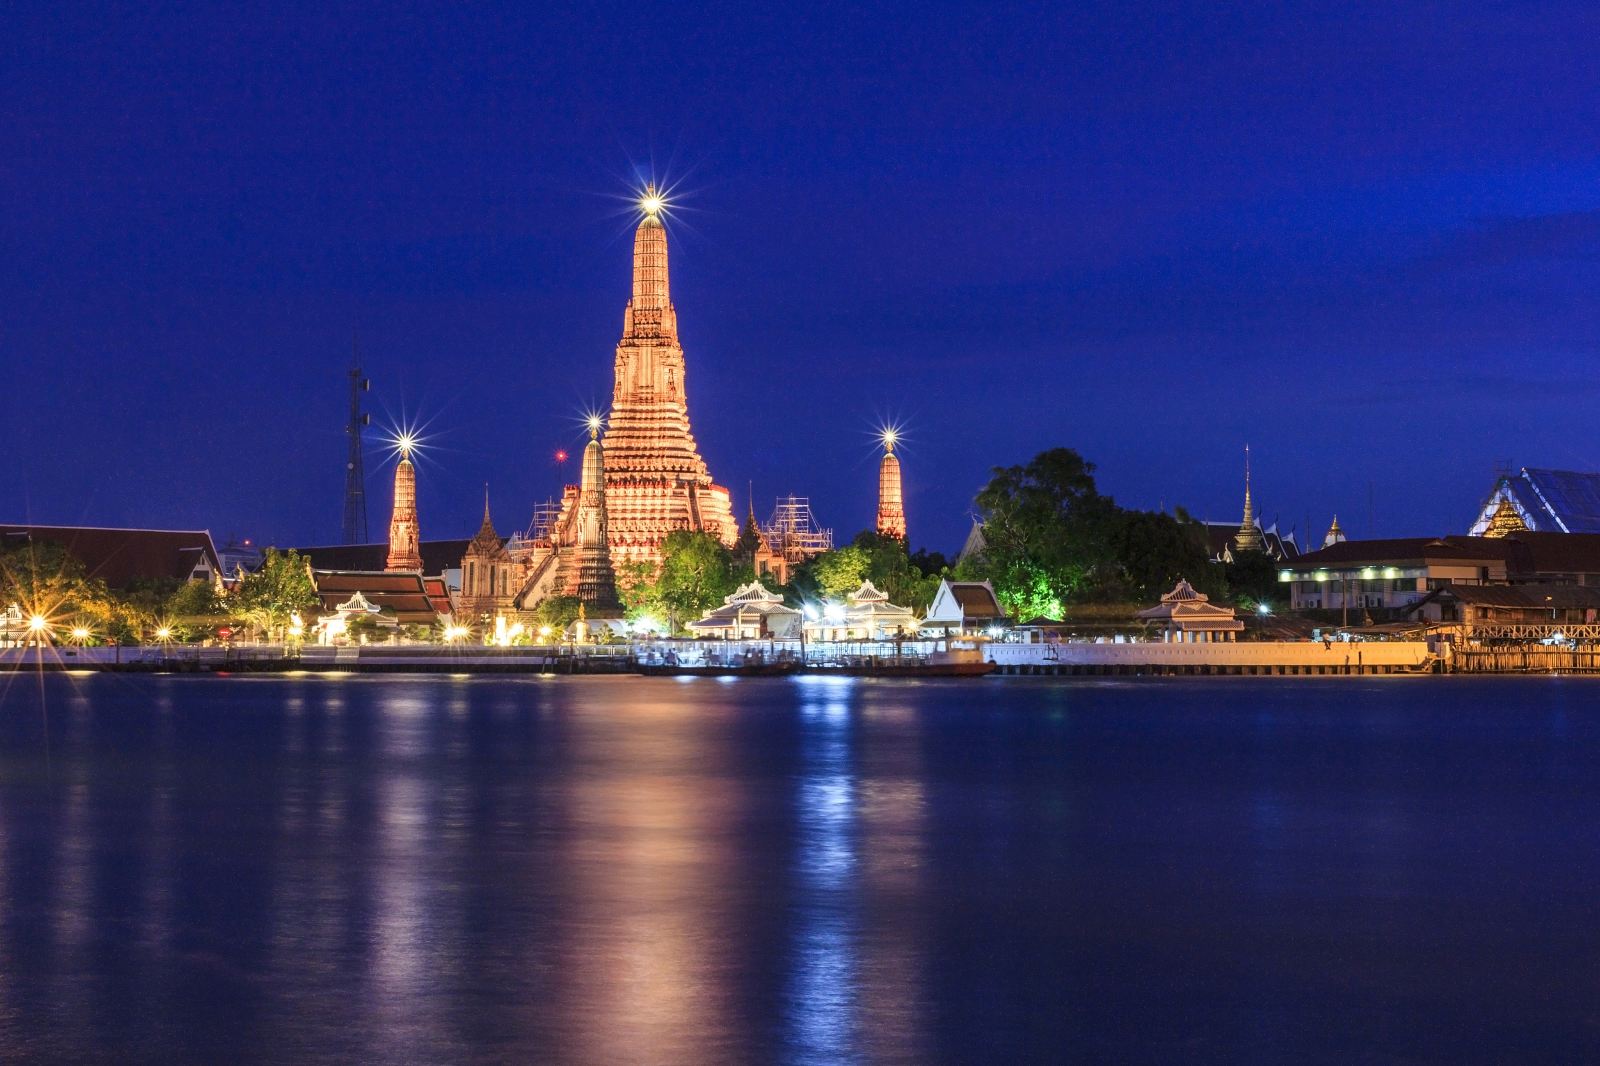 泰国曼谷 璀璨明珠号夜游湄南河